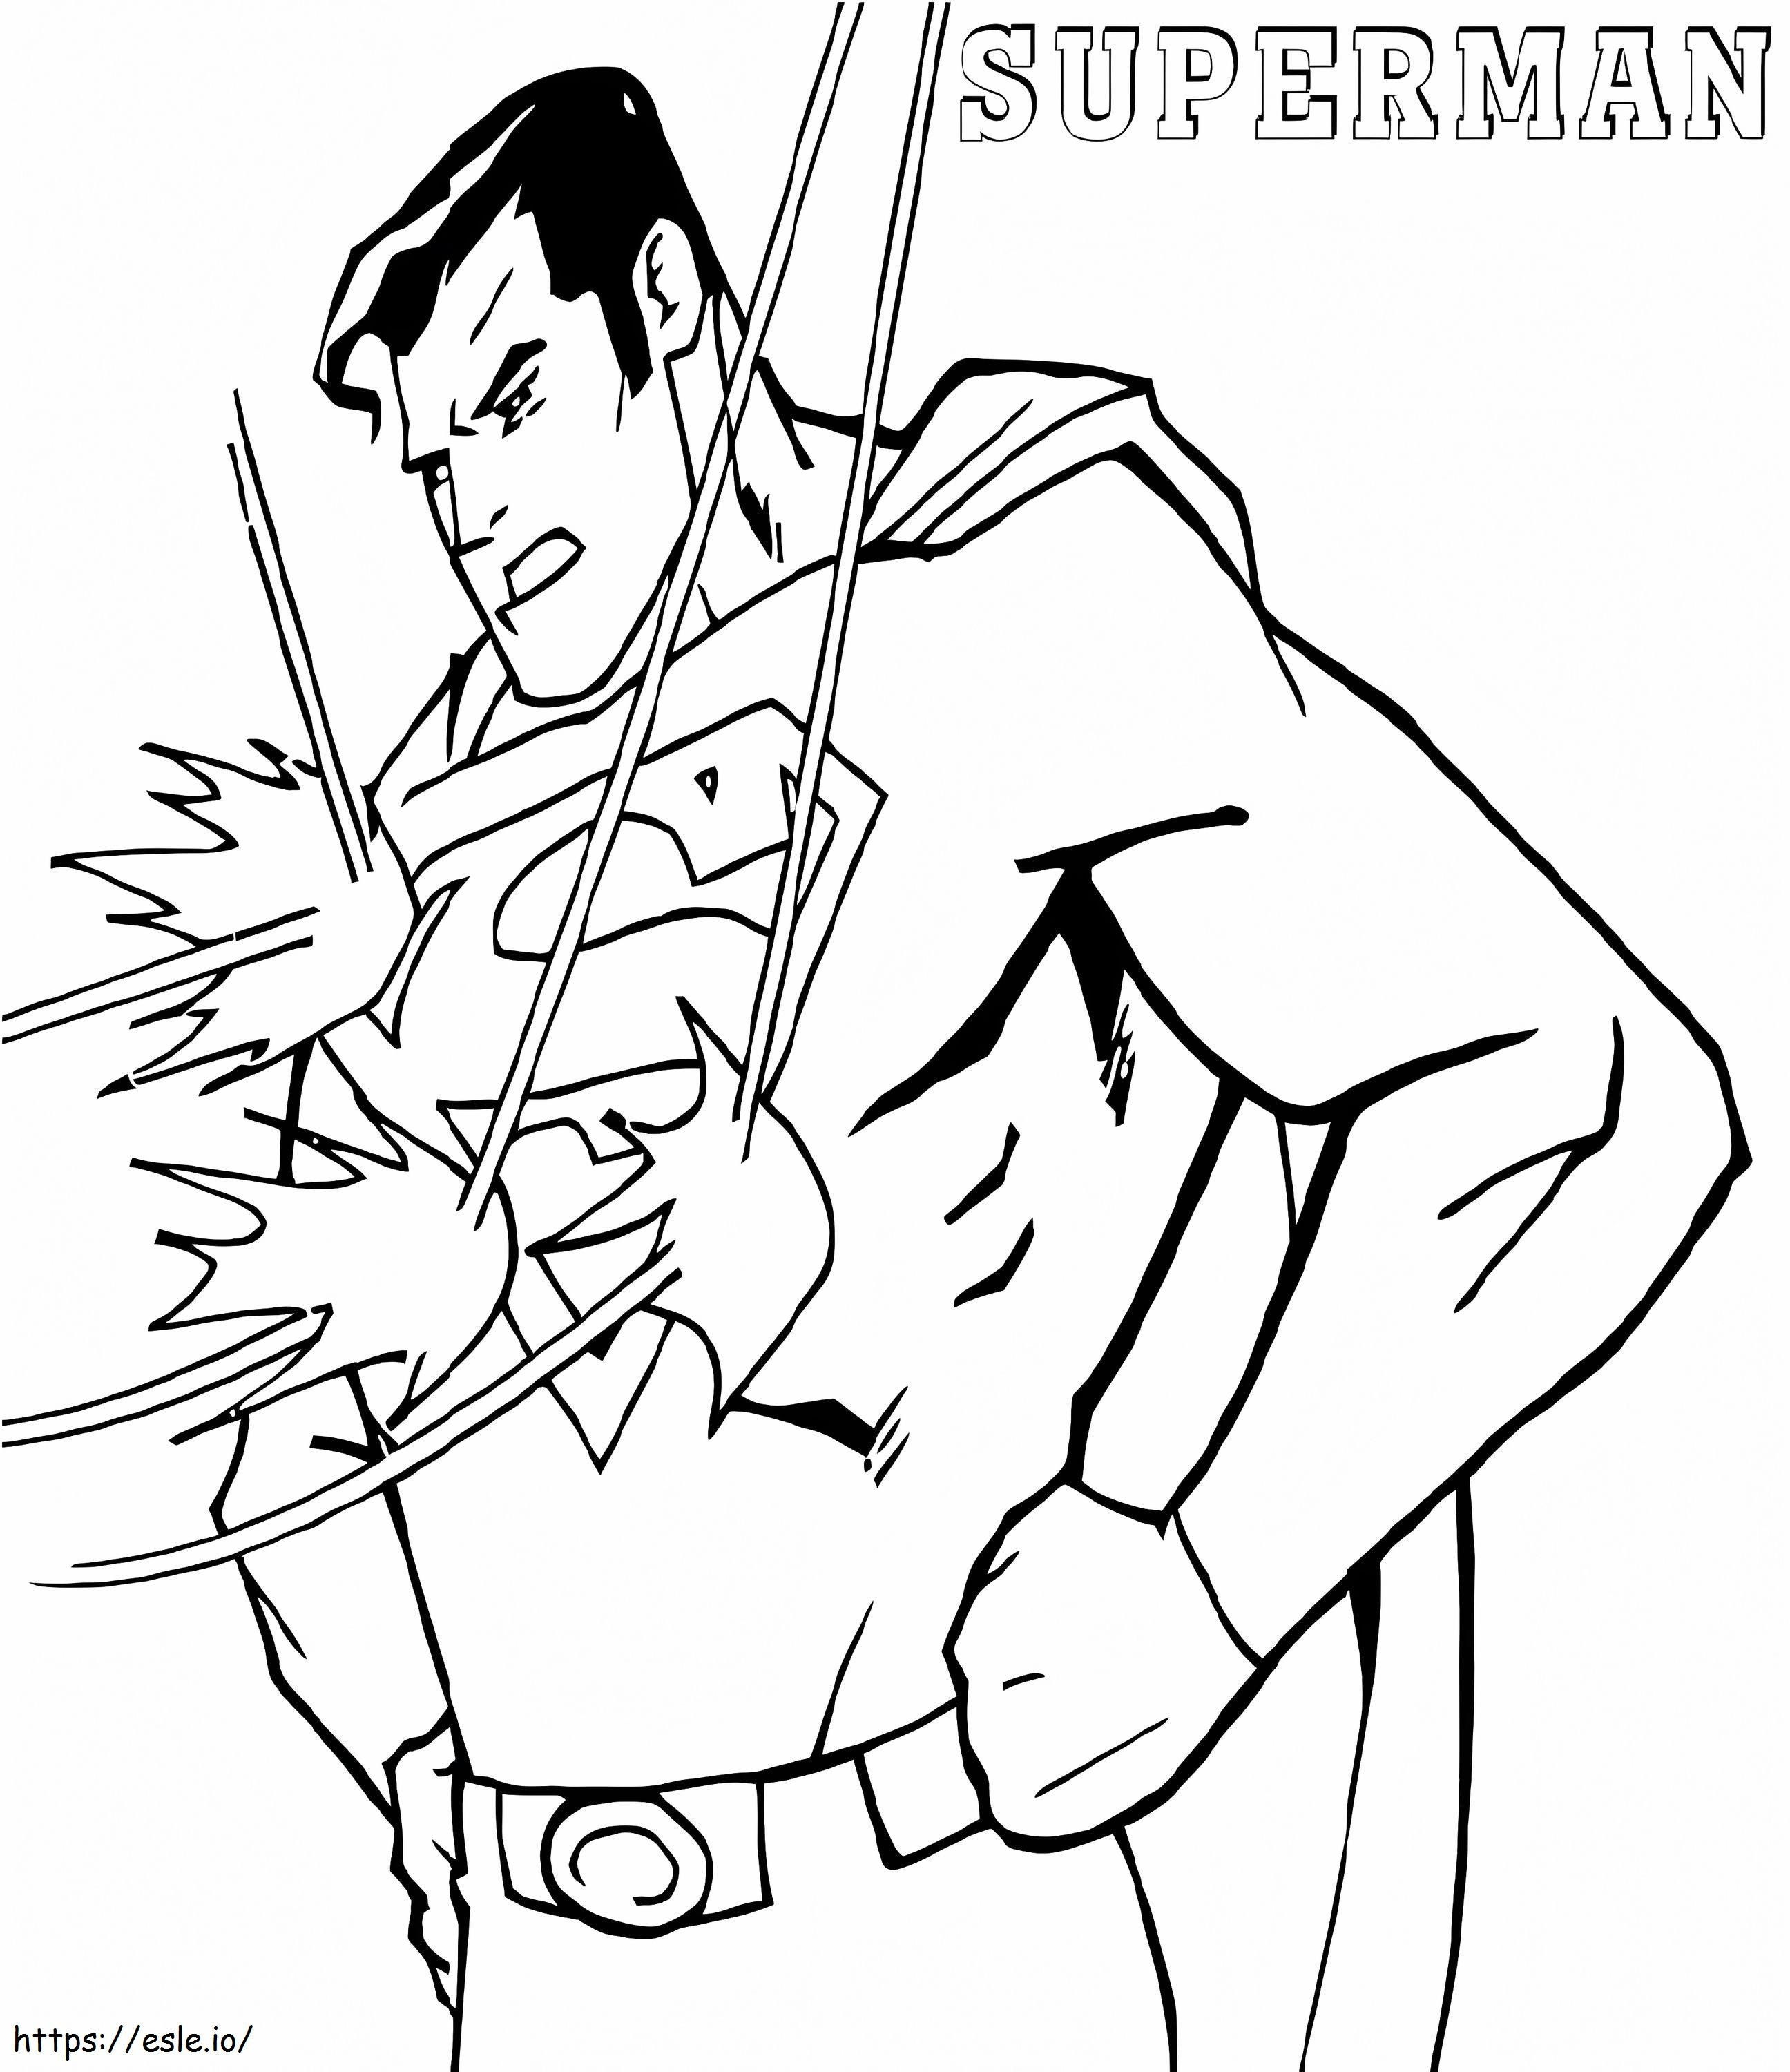 Superman Bulletproof coloring page